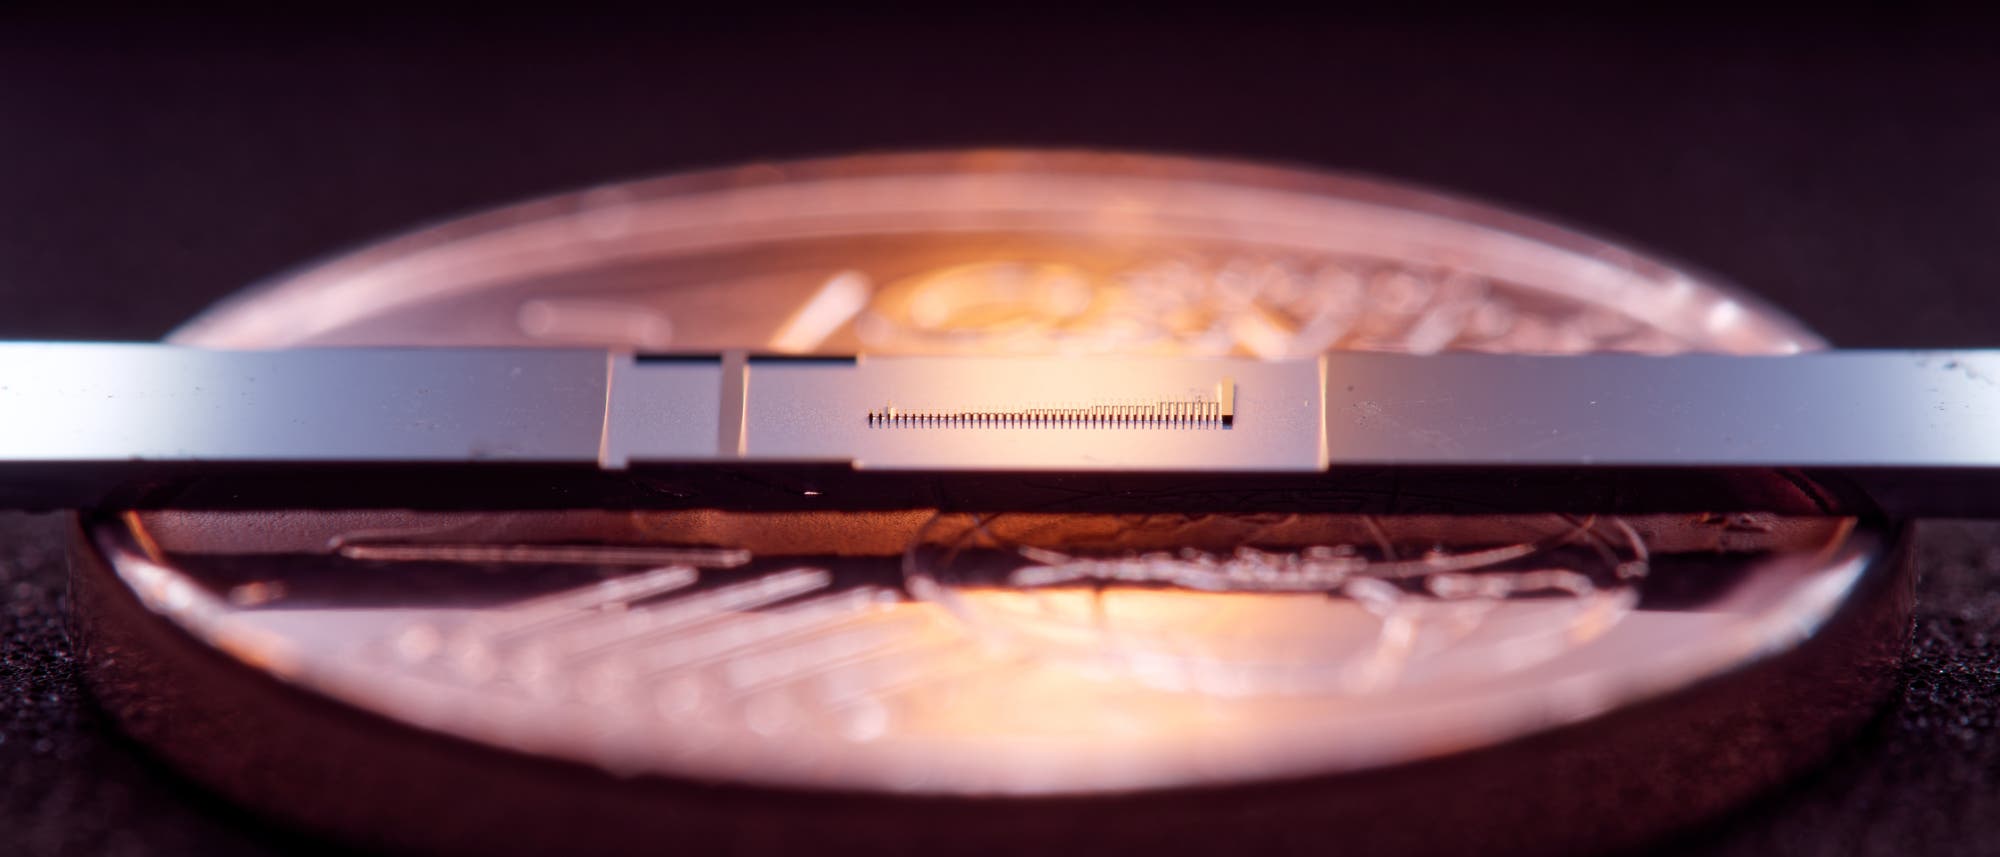 Mini-Teilchenbeschleuniger auf einem Mikrochip erzielt Energierekord -  Spektrum der Wissenschaft